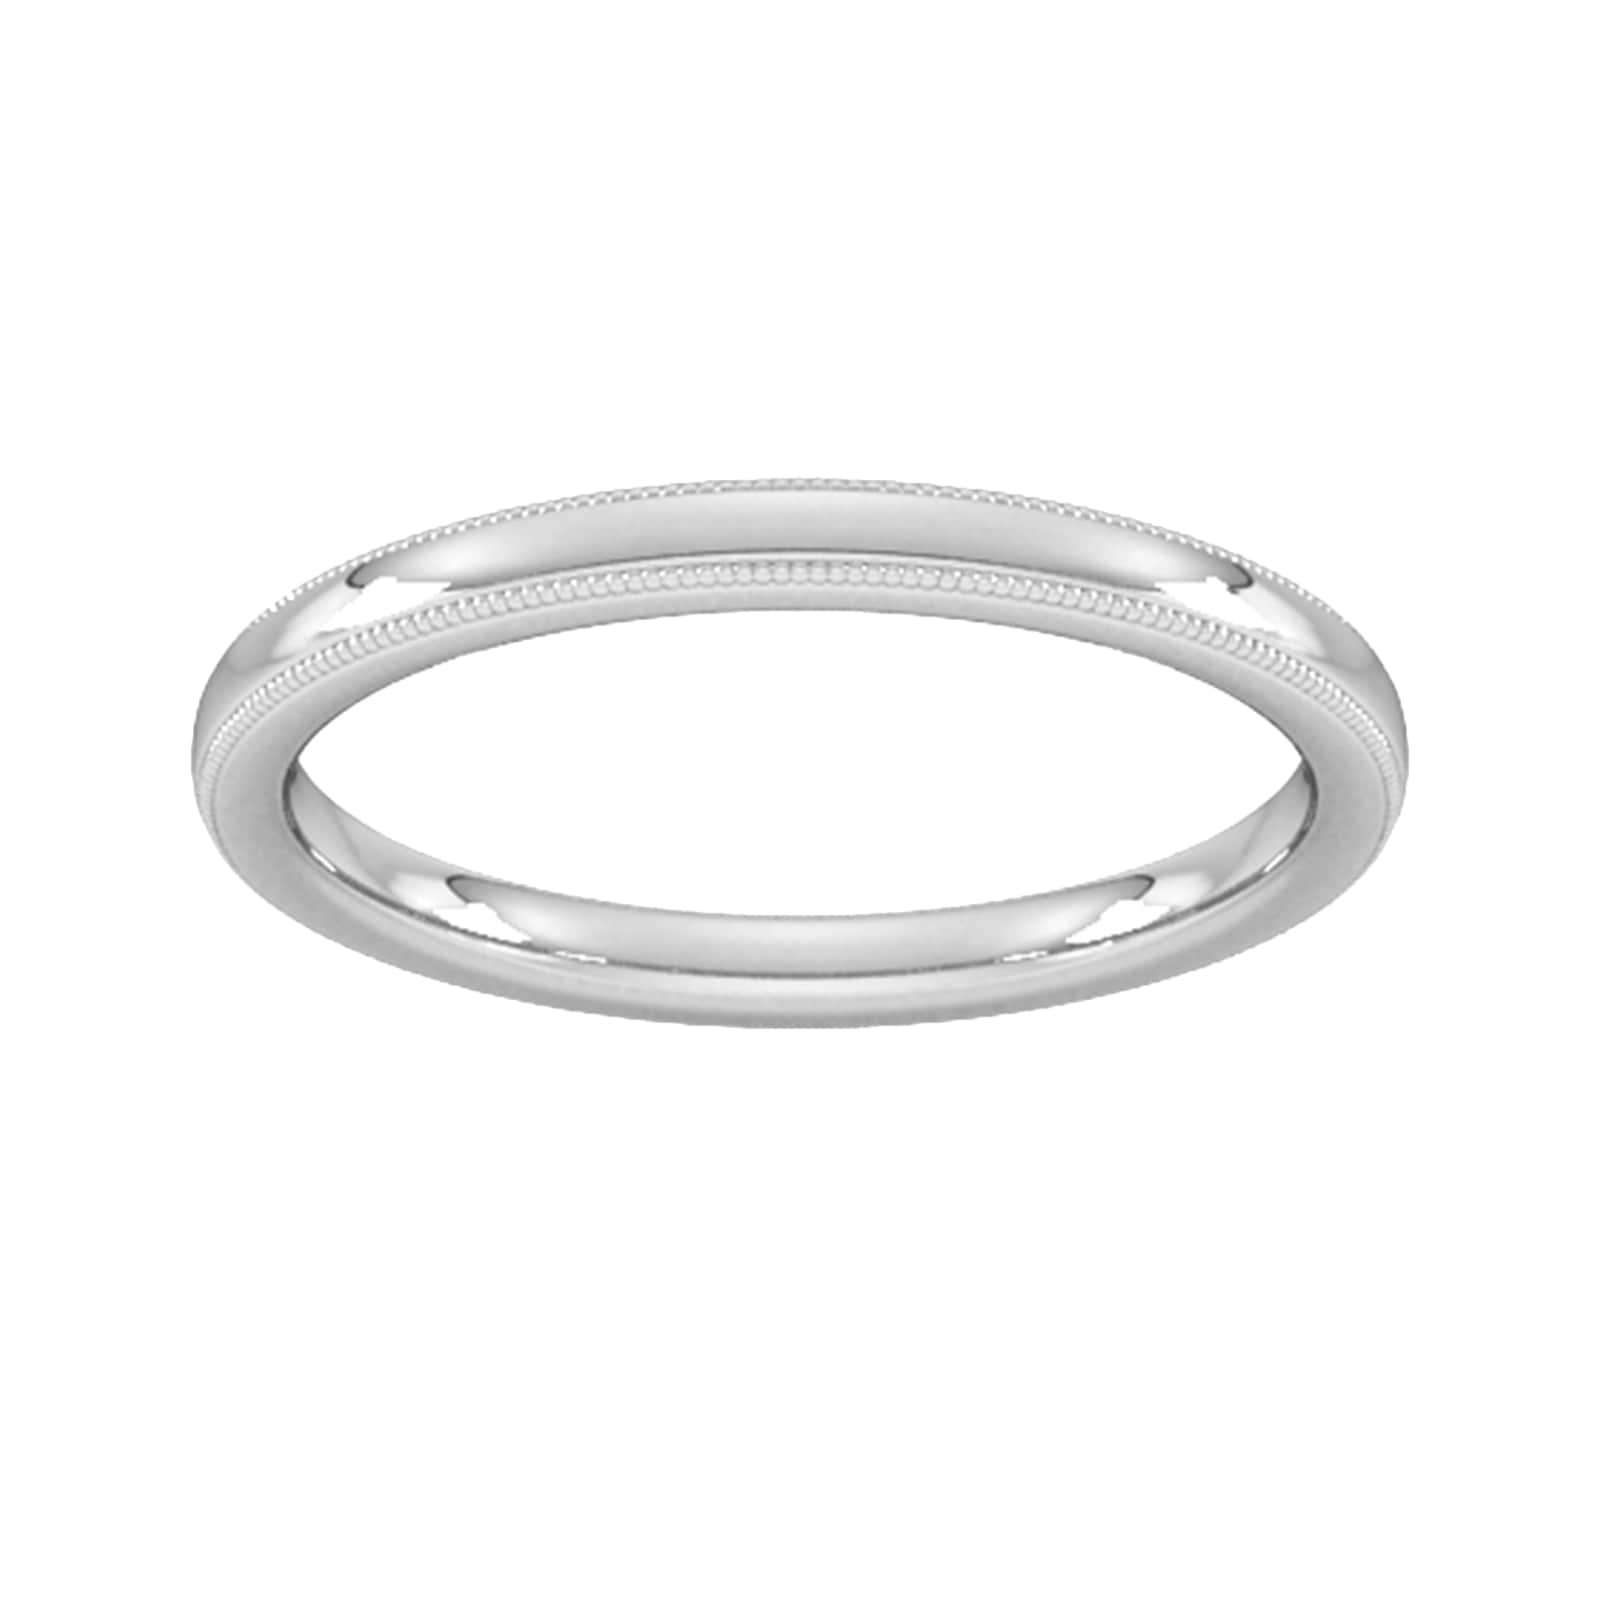 2mm Slight Court Standard Milgrain Edge Wedding Ring In 18 Carat White Gold - Ring Size Q